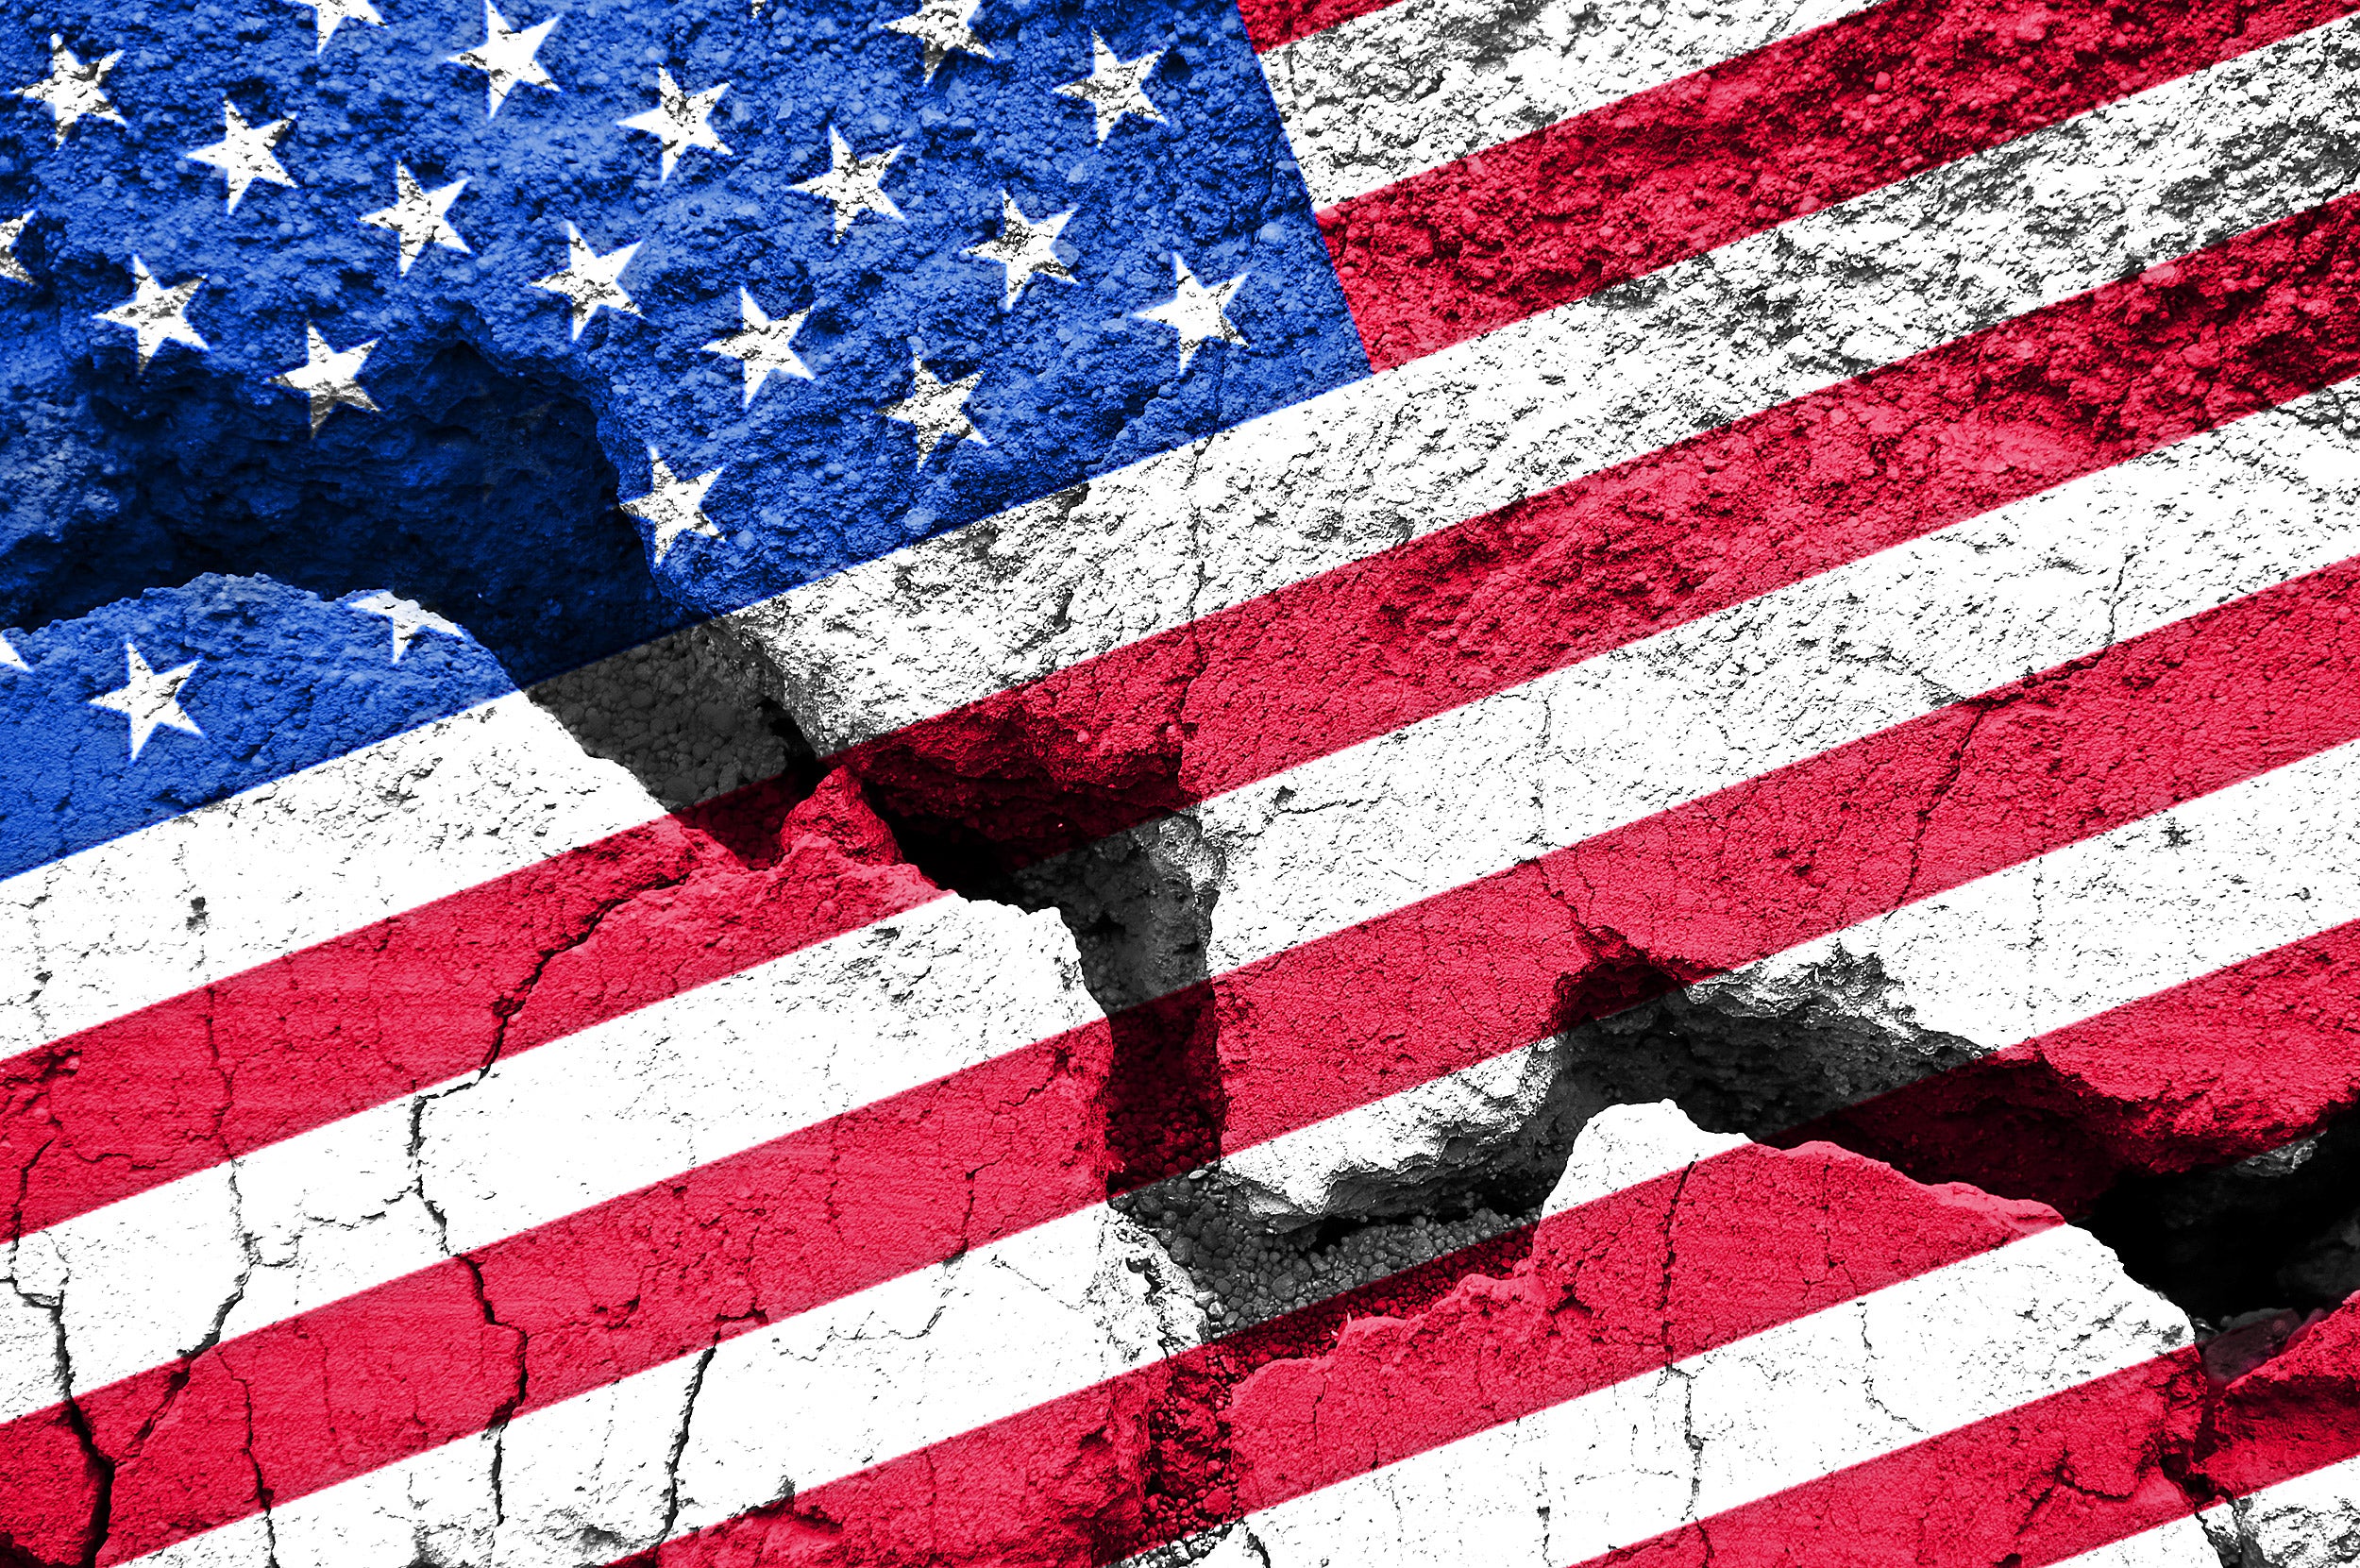 U.S. flag on cracked background.